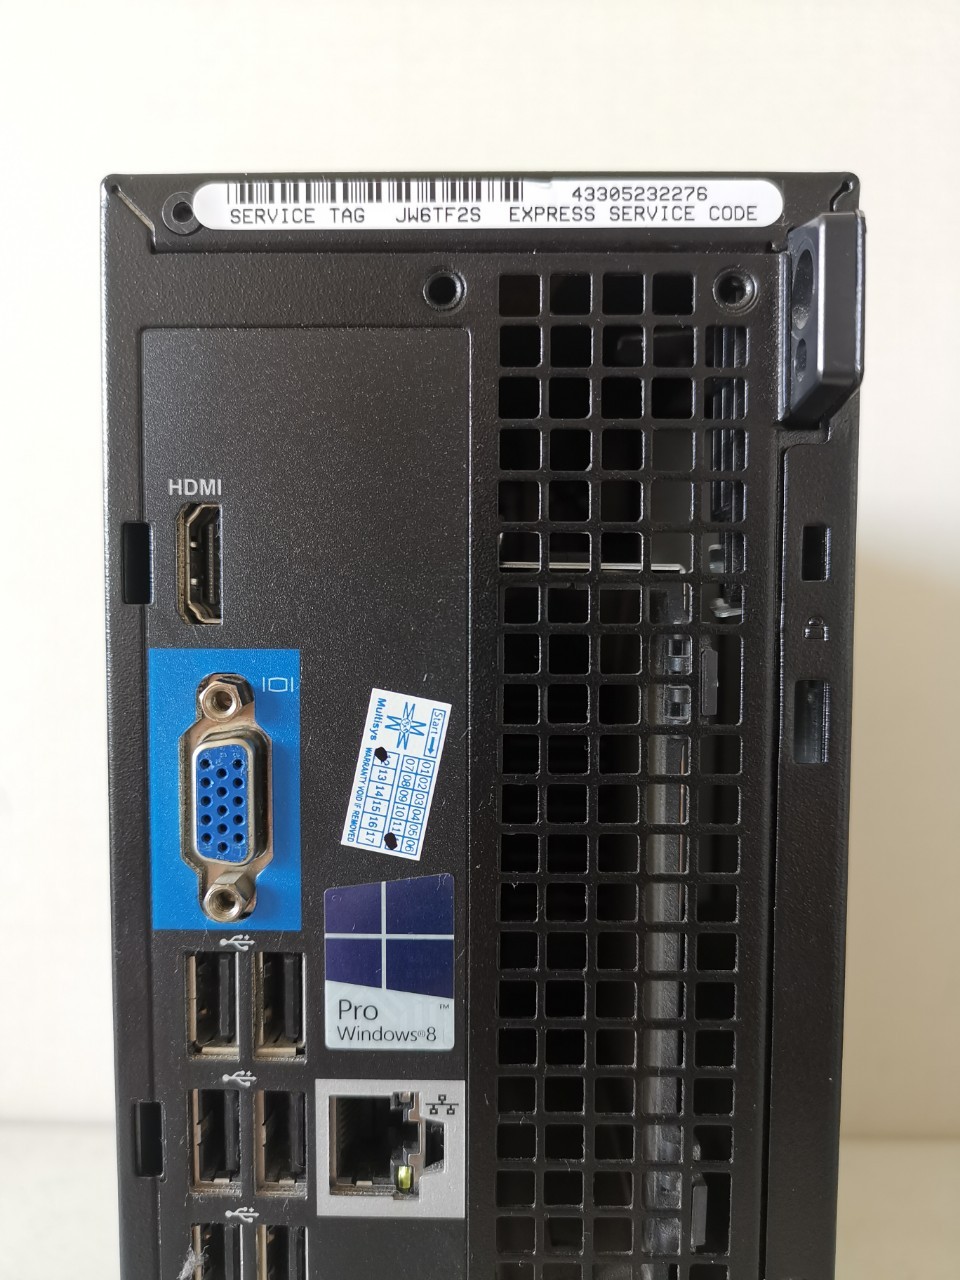 ข้อมูลเพิ่มเติมของ คอมพิวเตอร์ Dell Optiplex 3010 SFF Core i5-3470 (เจน 3)  มี HDMI ต่อออกจอทีวีได้  ลงวินโดว์แท้และโปรแกรมพื้นฐานให้พร้อมใช้งาน